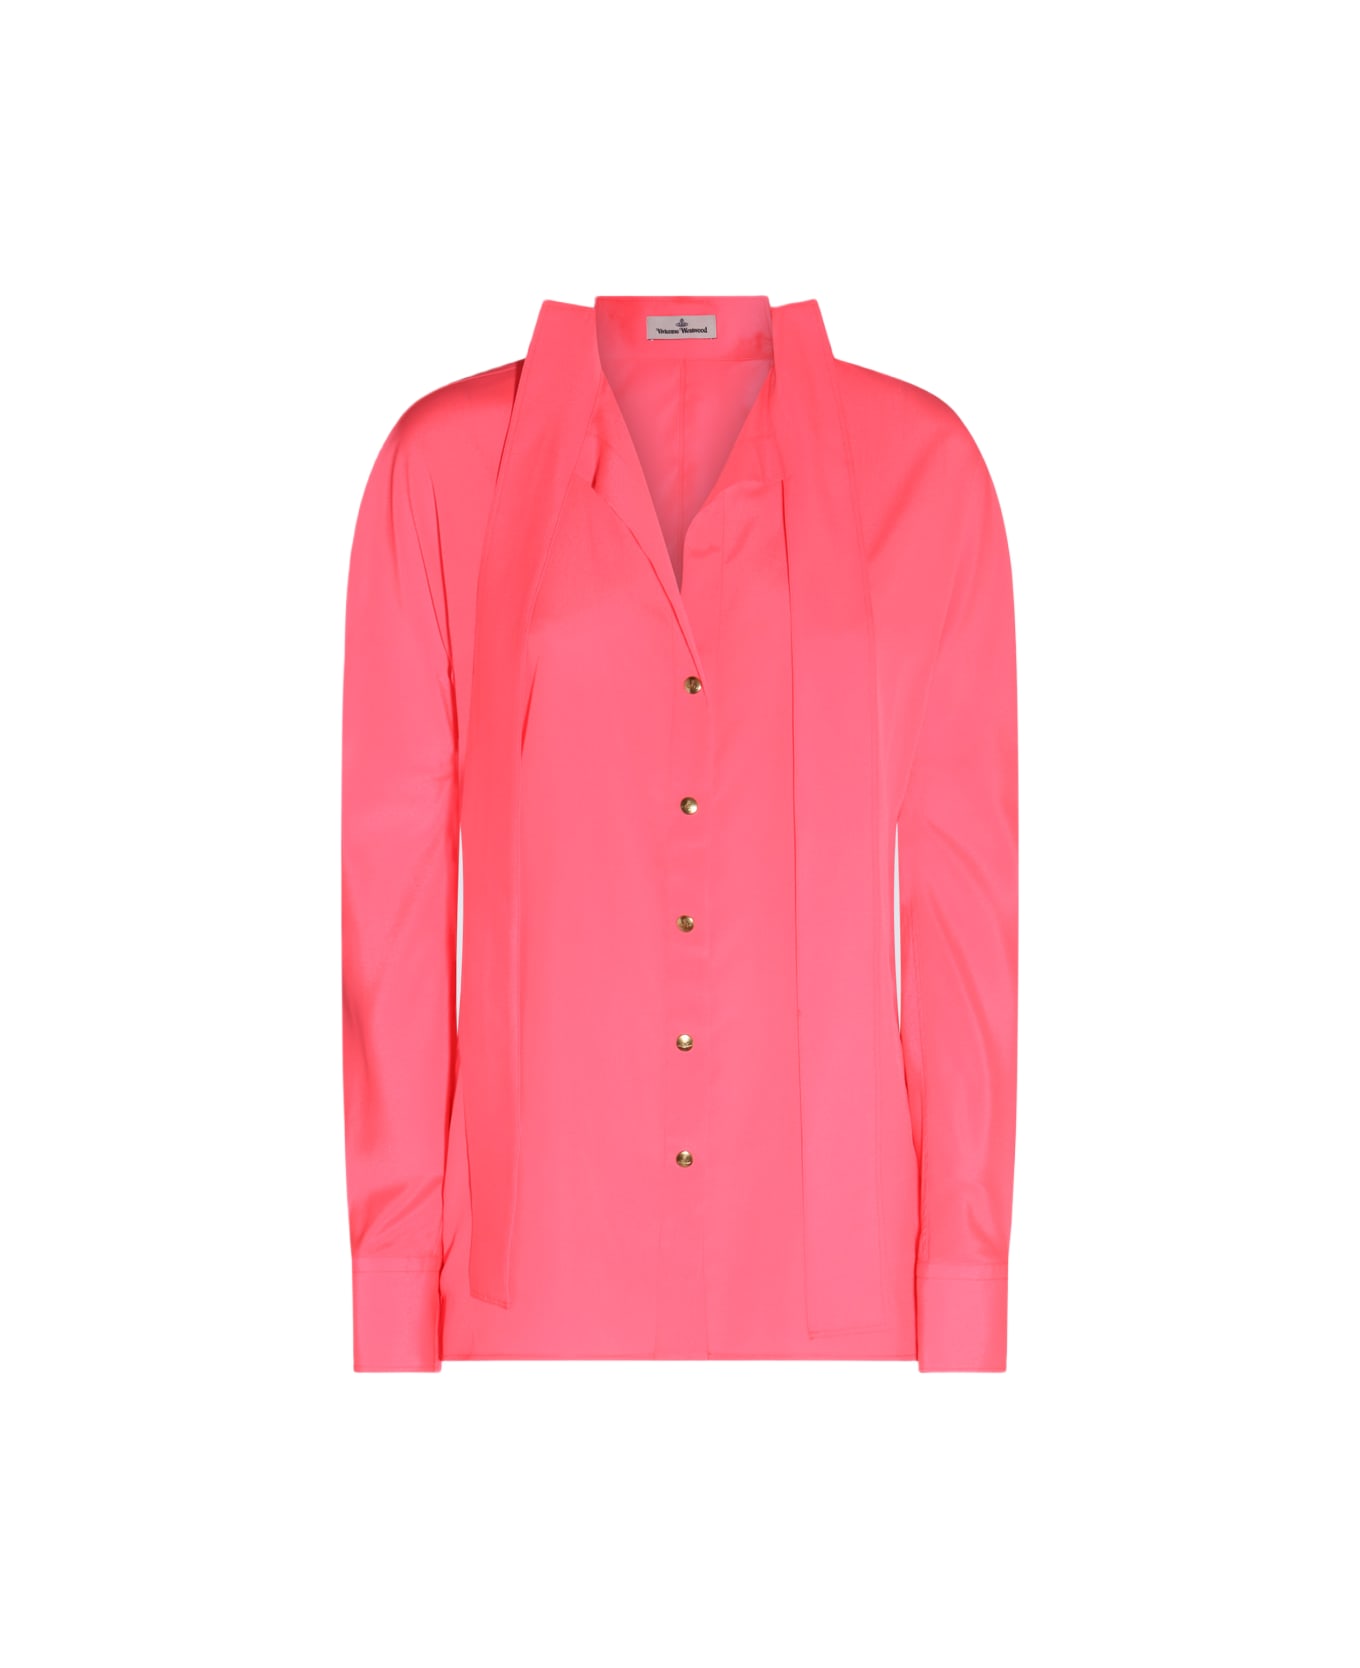 Vivienne Westwood Pink Neon Viscose Stretch Shirt - PINK NEON